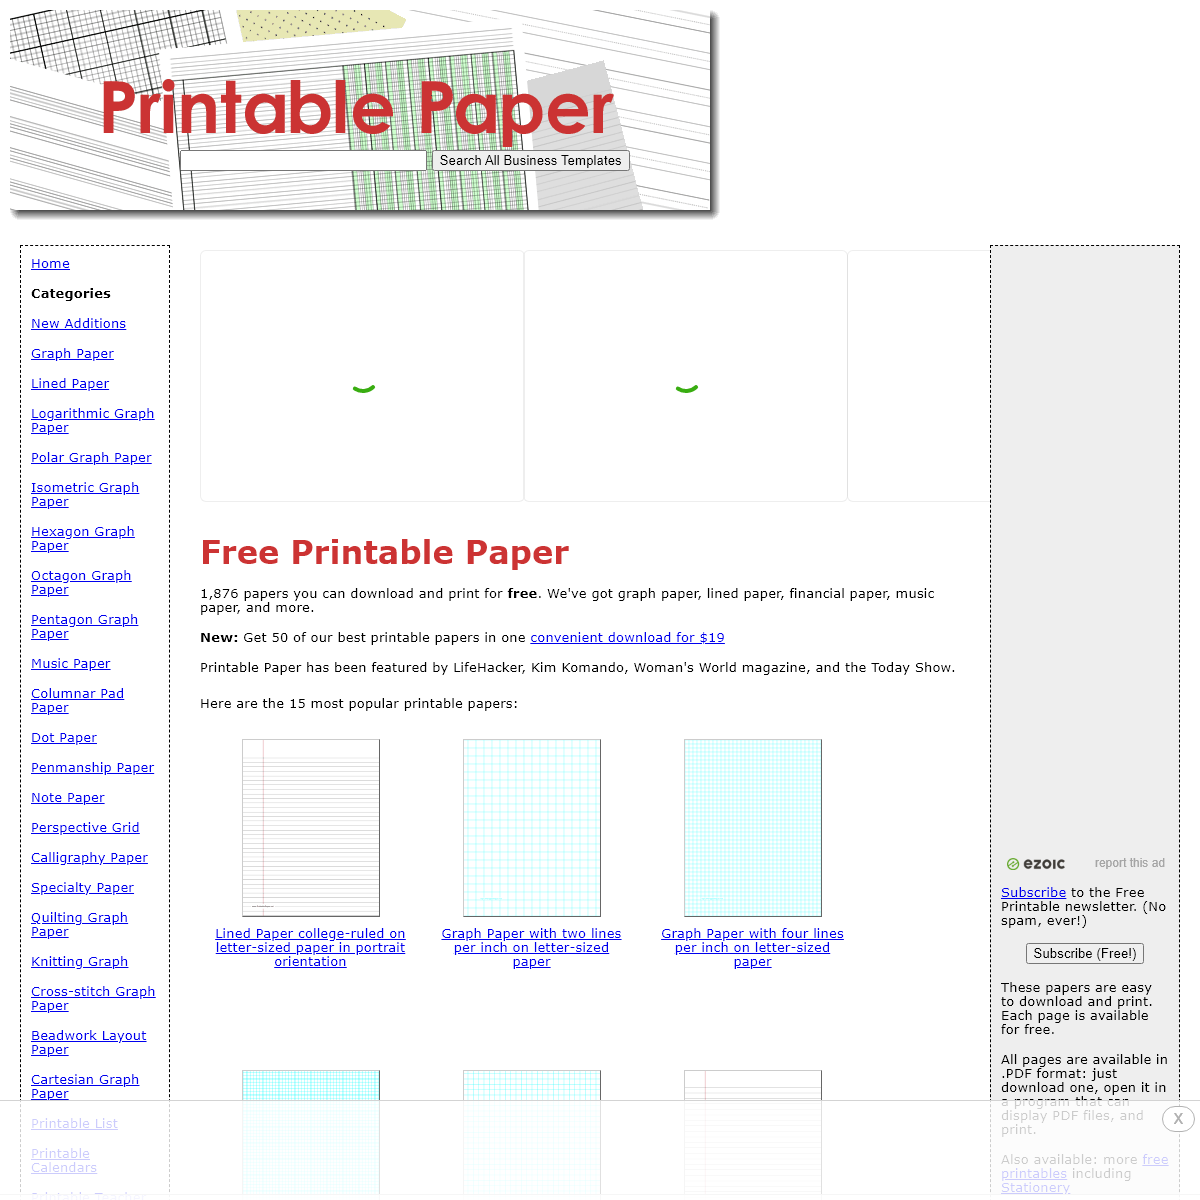 A complete backup of printablepaper.net